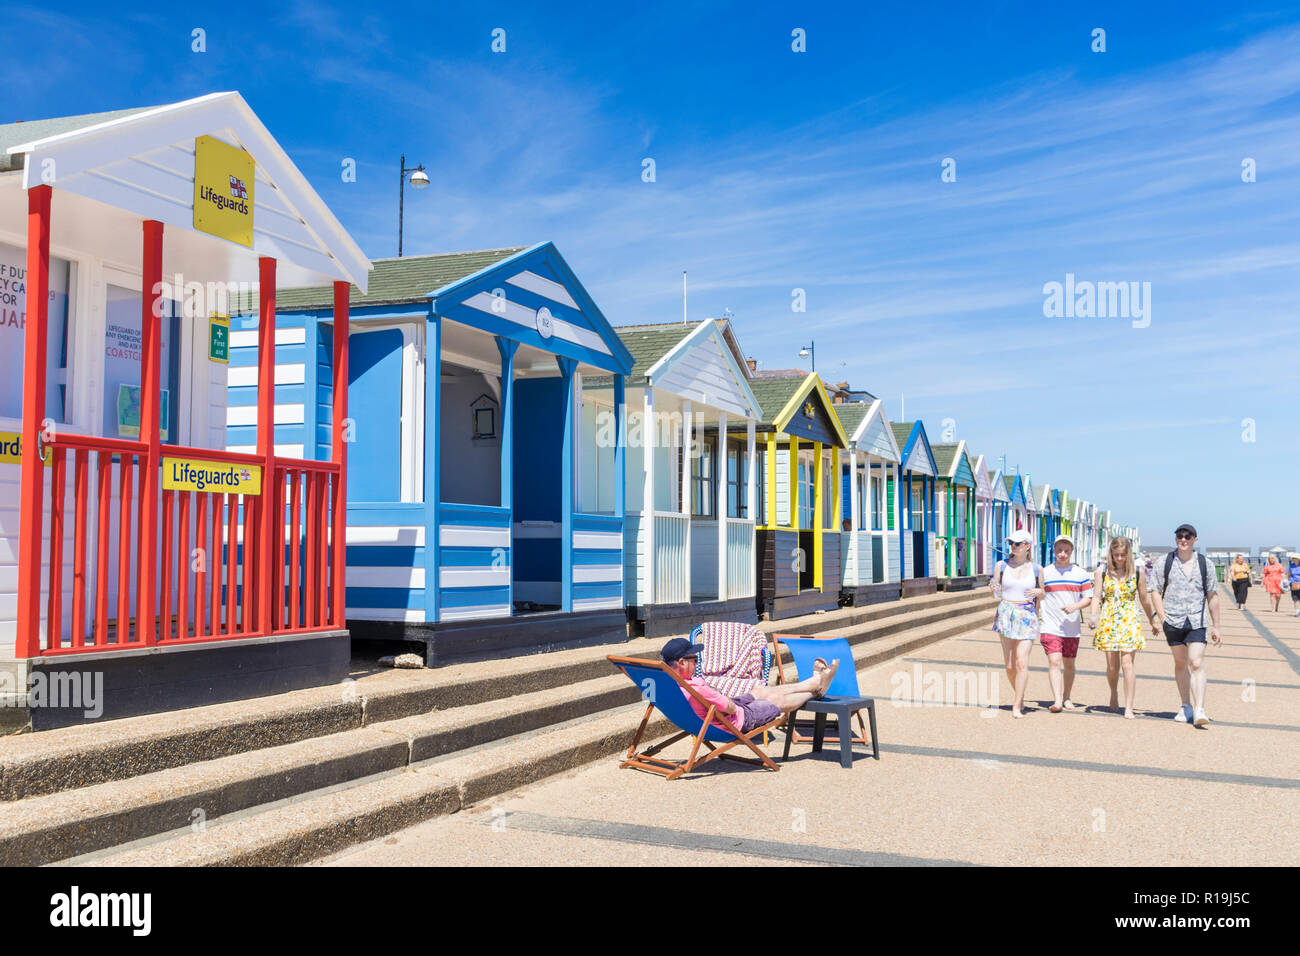 Cabines de plage de Southwold beach huts peint de couleurs vives, les vacanciers à la plage de Southwold North Parade East Anglia Suffolk Southwold England UK GO Europe Banque D'Images